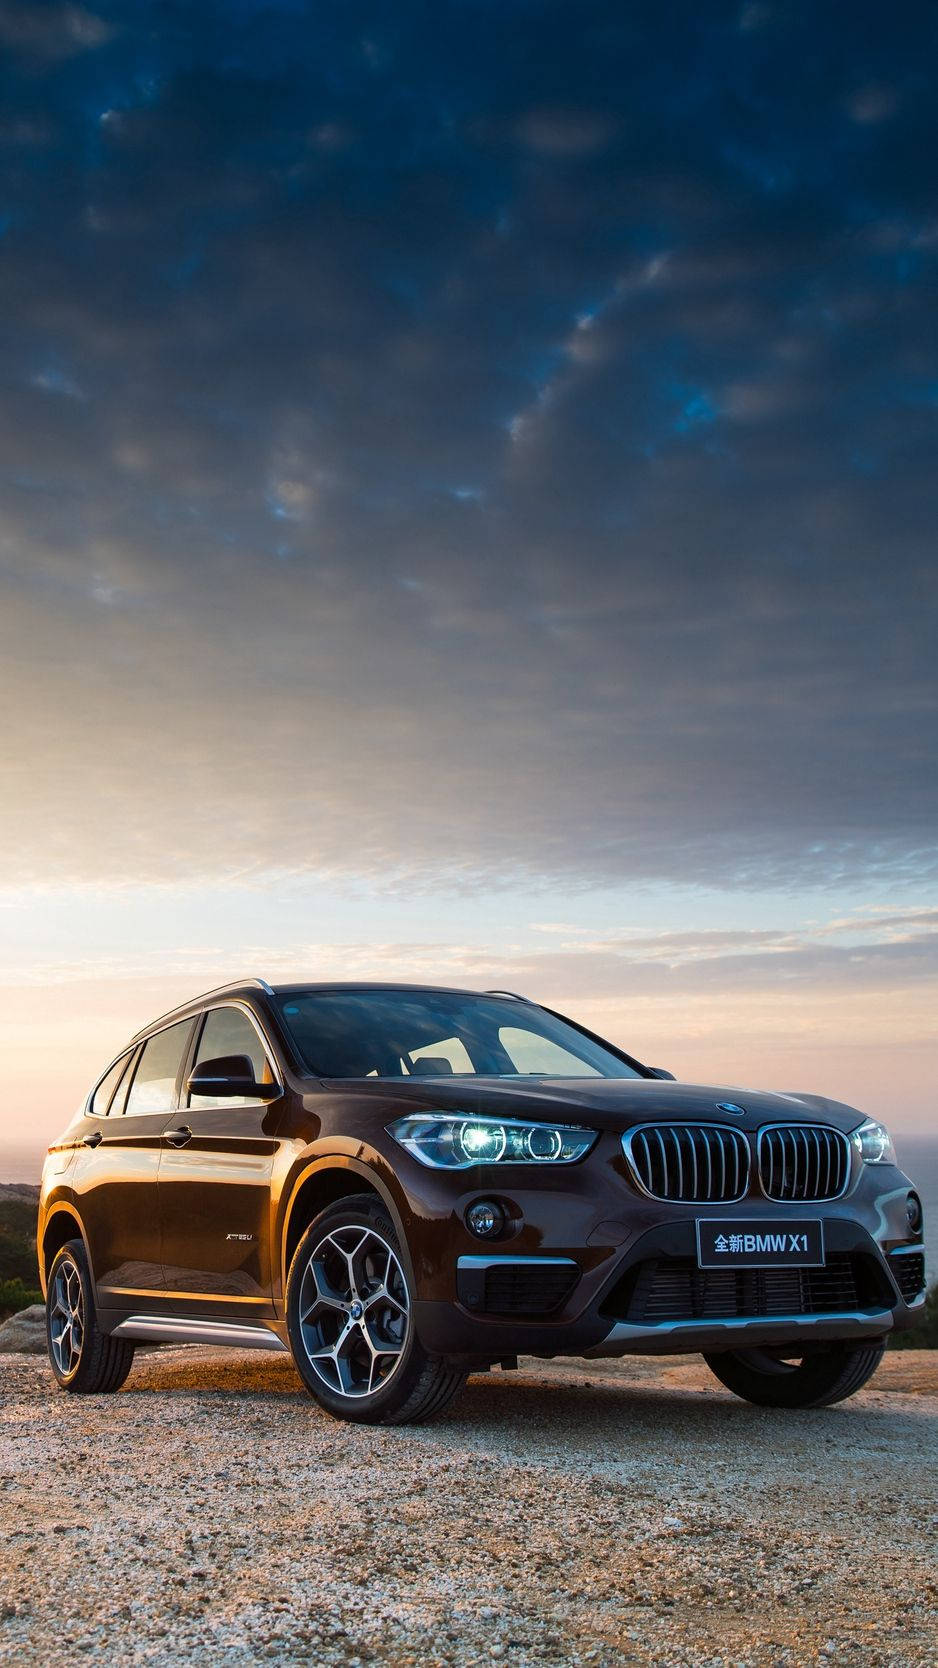 X1 Model BMW iPhone X-baggrundsbillede: Et klassisk tekstureret sort og hvidt landskab. Wallpaper